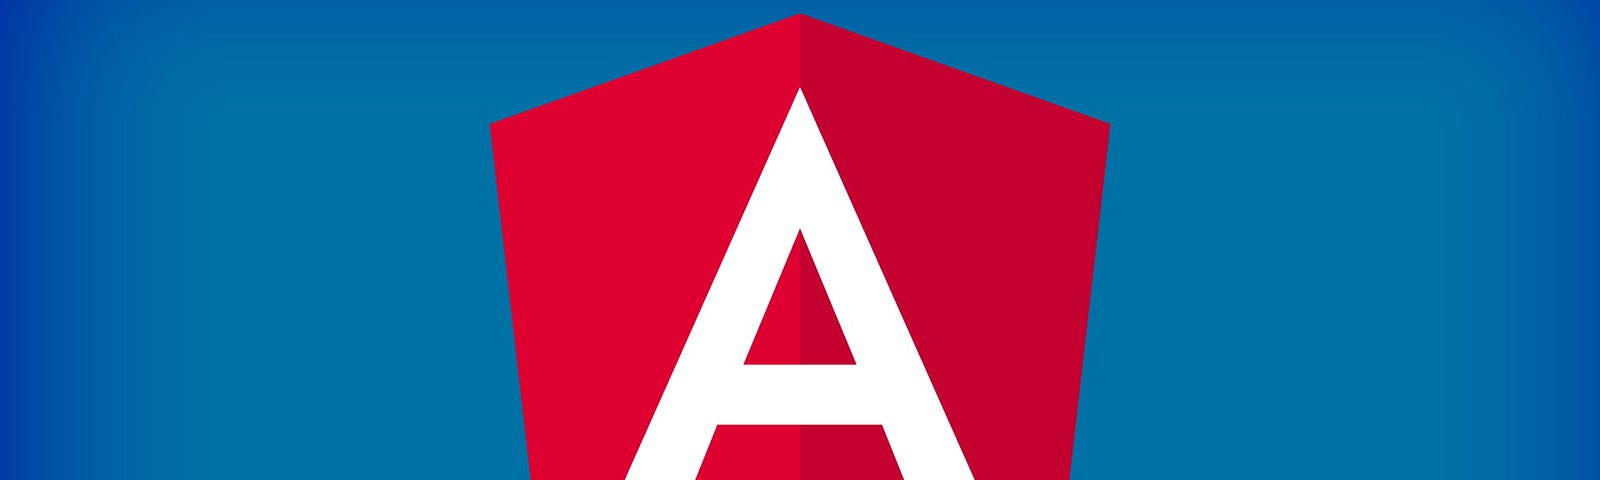 Image of Angular logo on a blue background